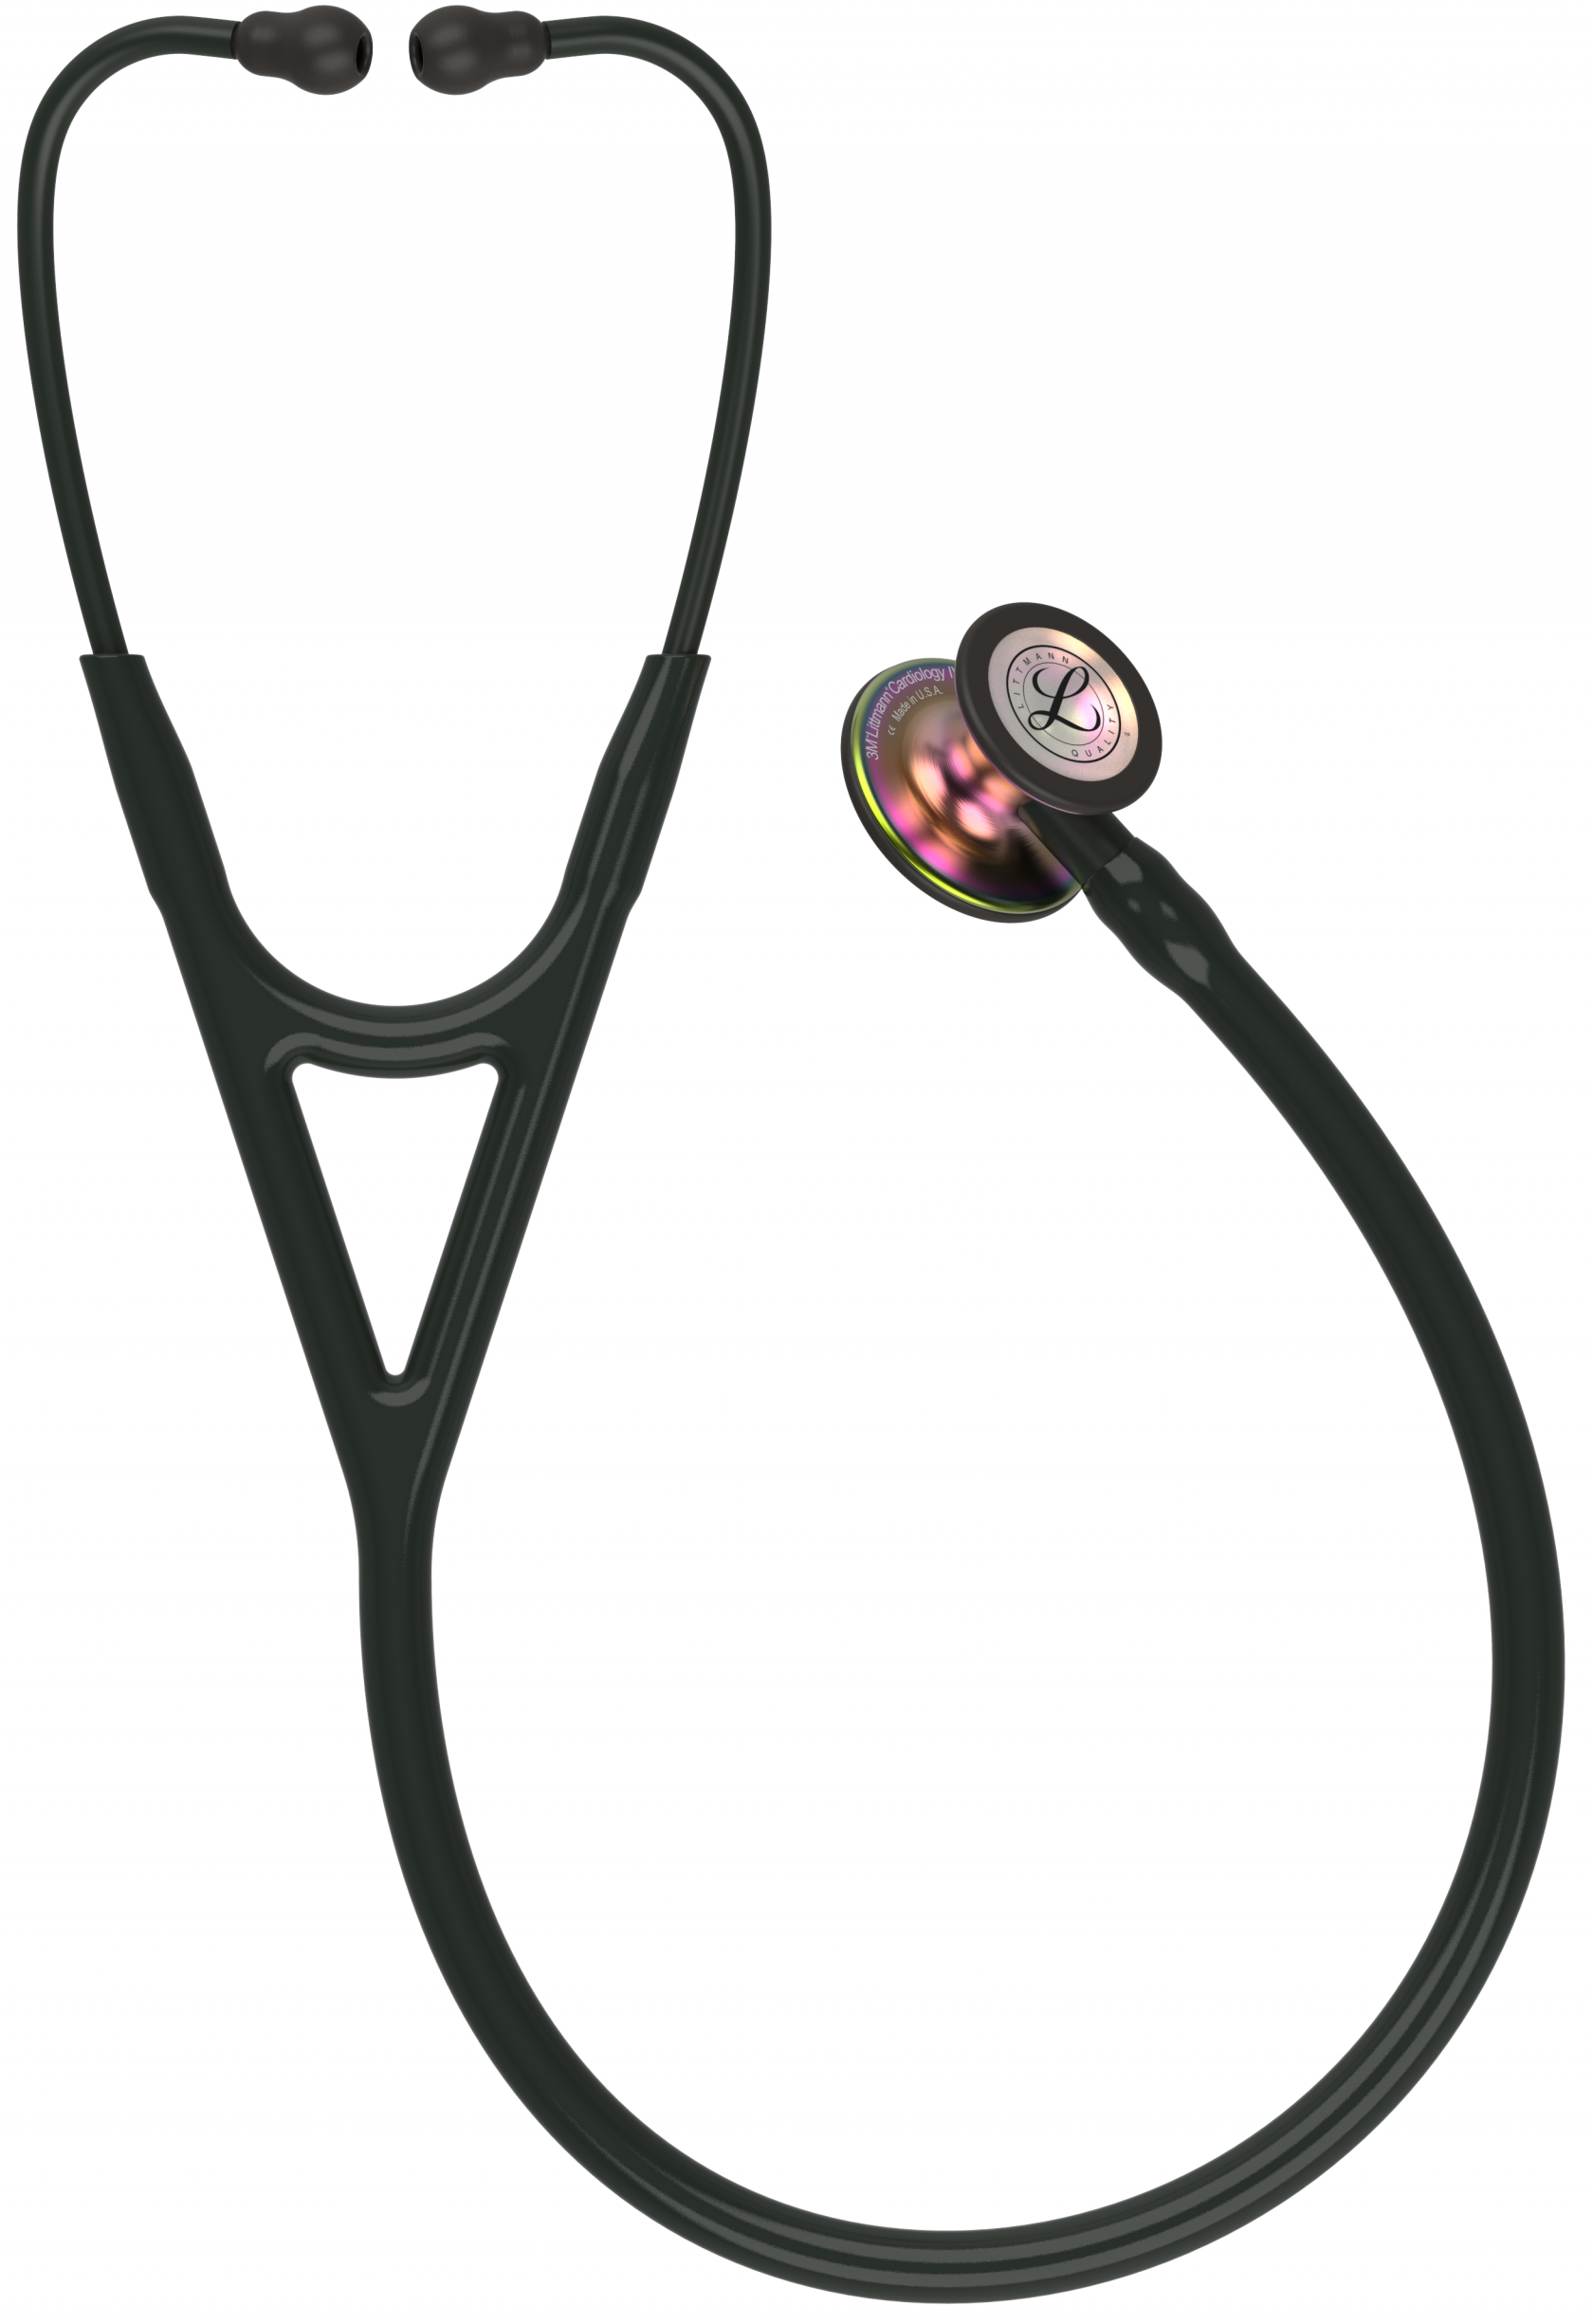 3M Stethoscope Littmann Cardiology IV Black with Rainbow Finish image 0